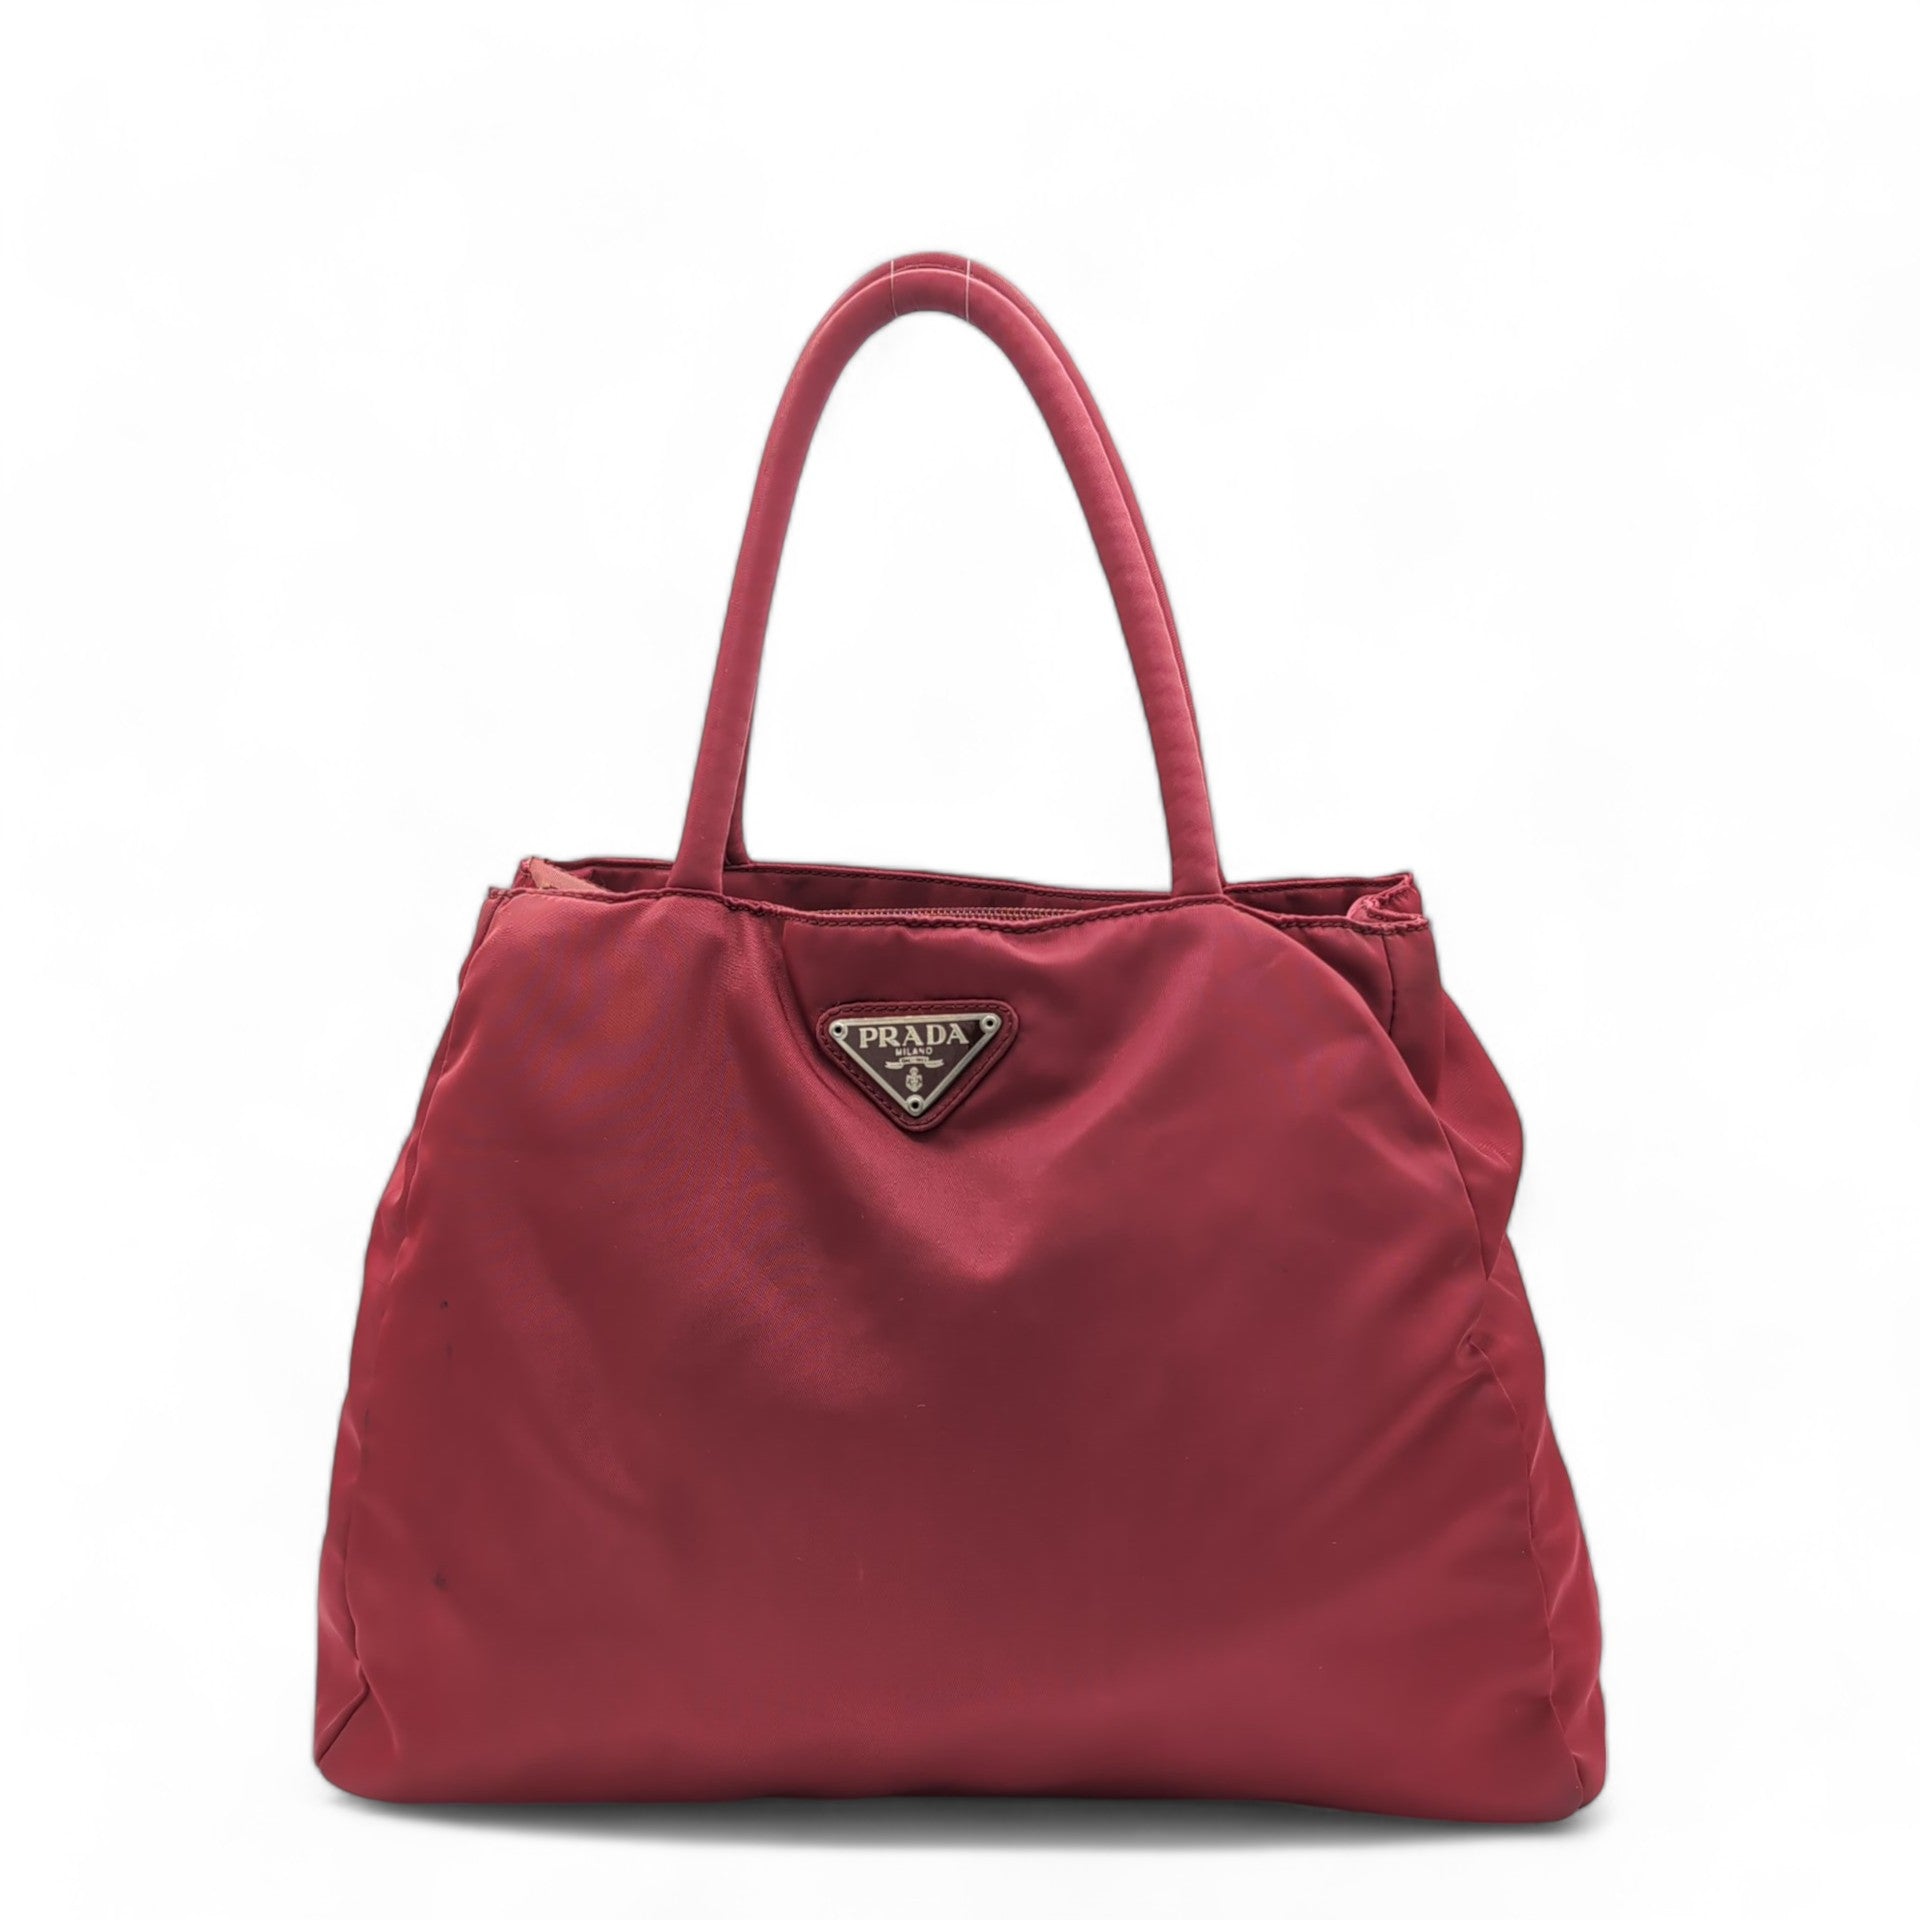 Prada handbag / shopper made of nylon with long handles red